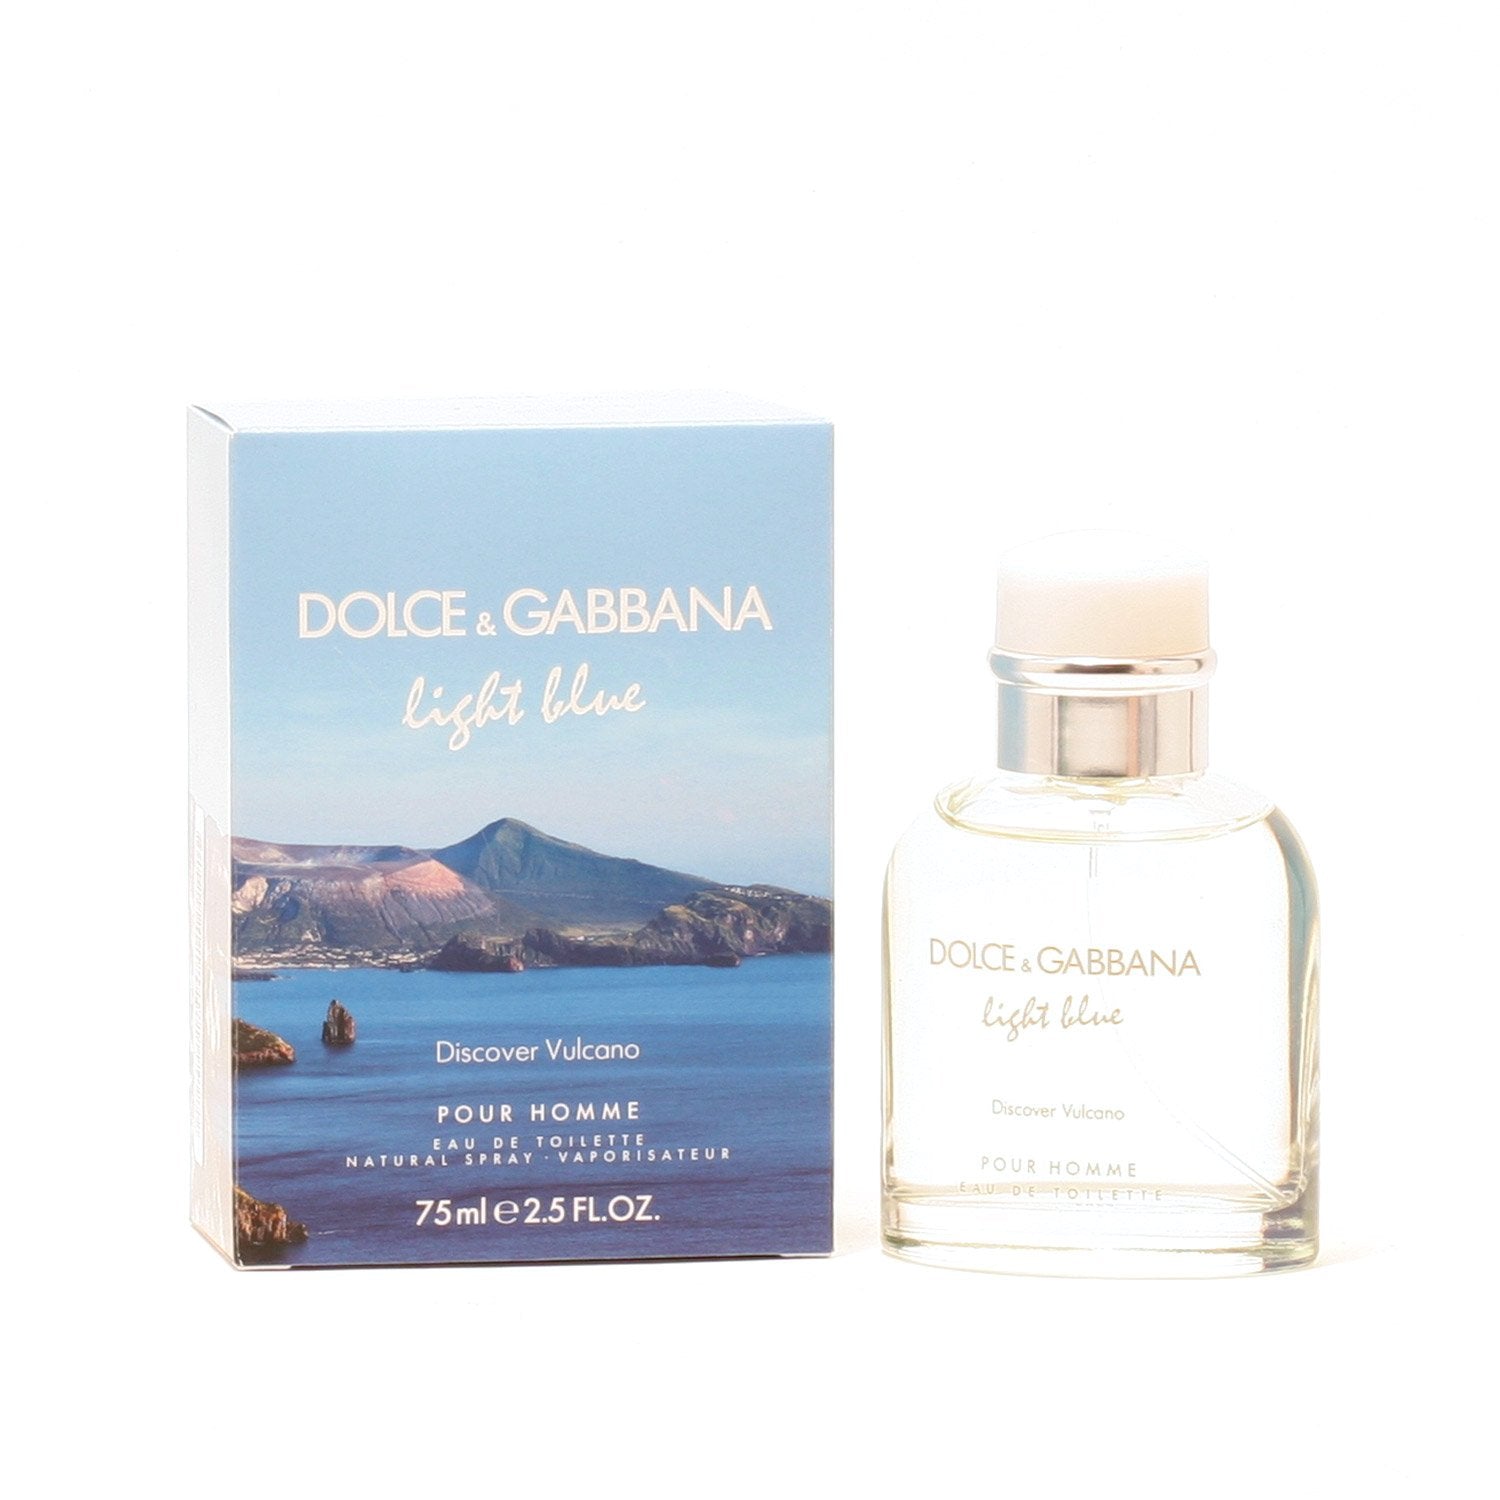 Dolce & Gabbana Light Blue Homme Eau De Toilette, 2.5-fl oz 